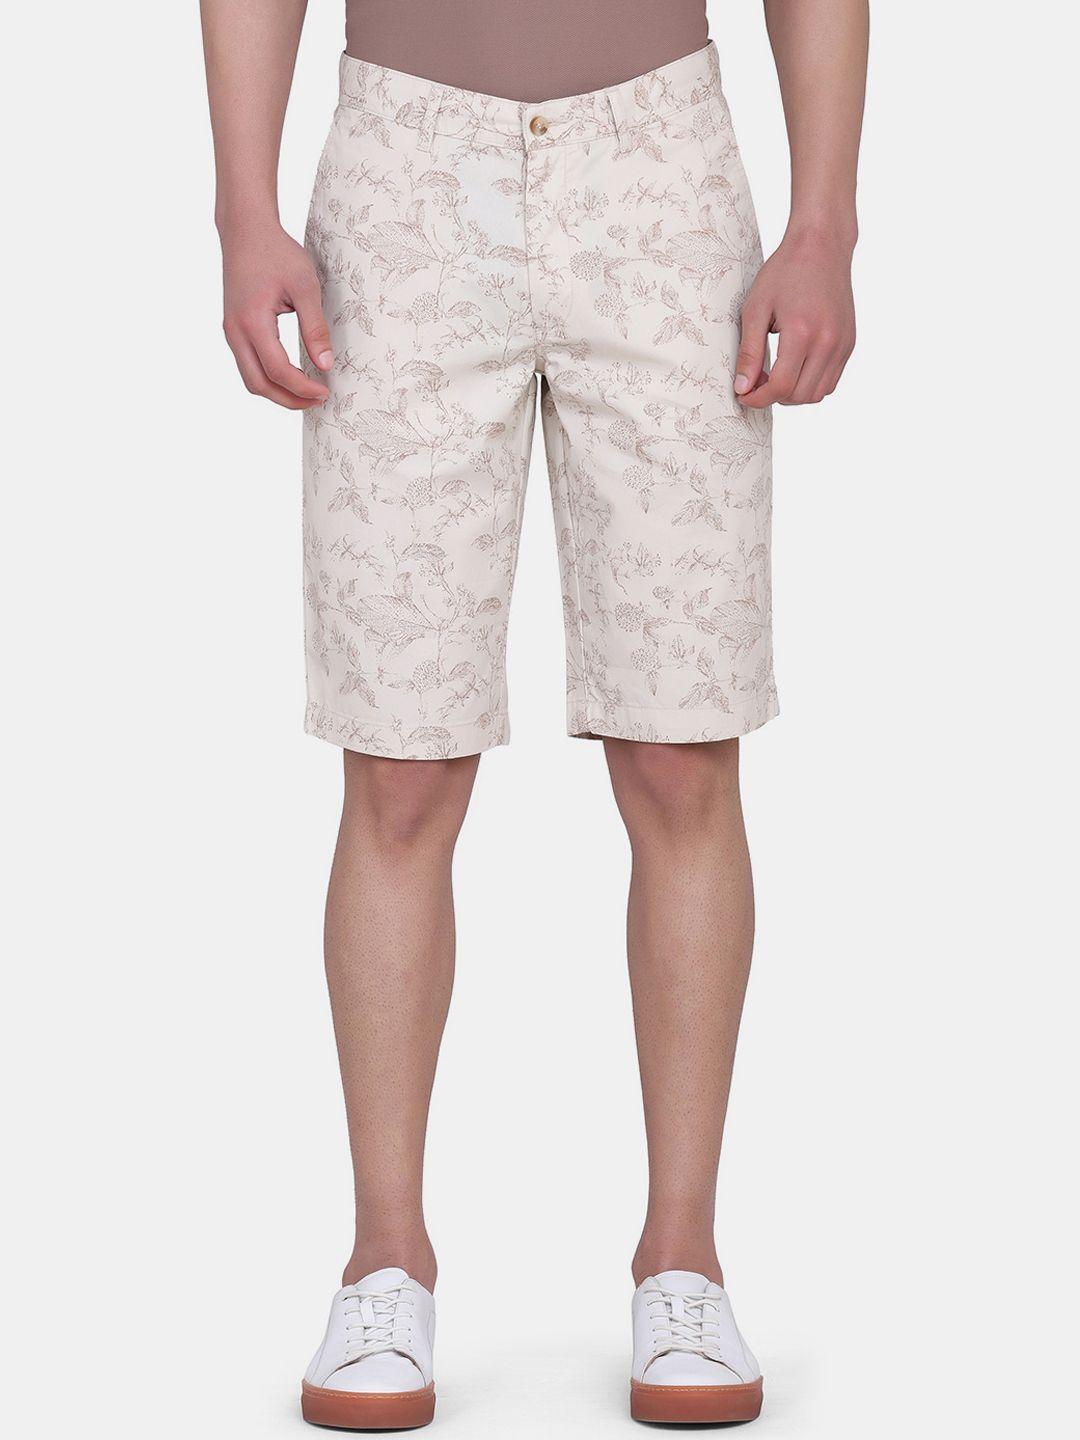 blackberrys men beige floral printed bs-10 slim fit low-rise cotton shorts